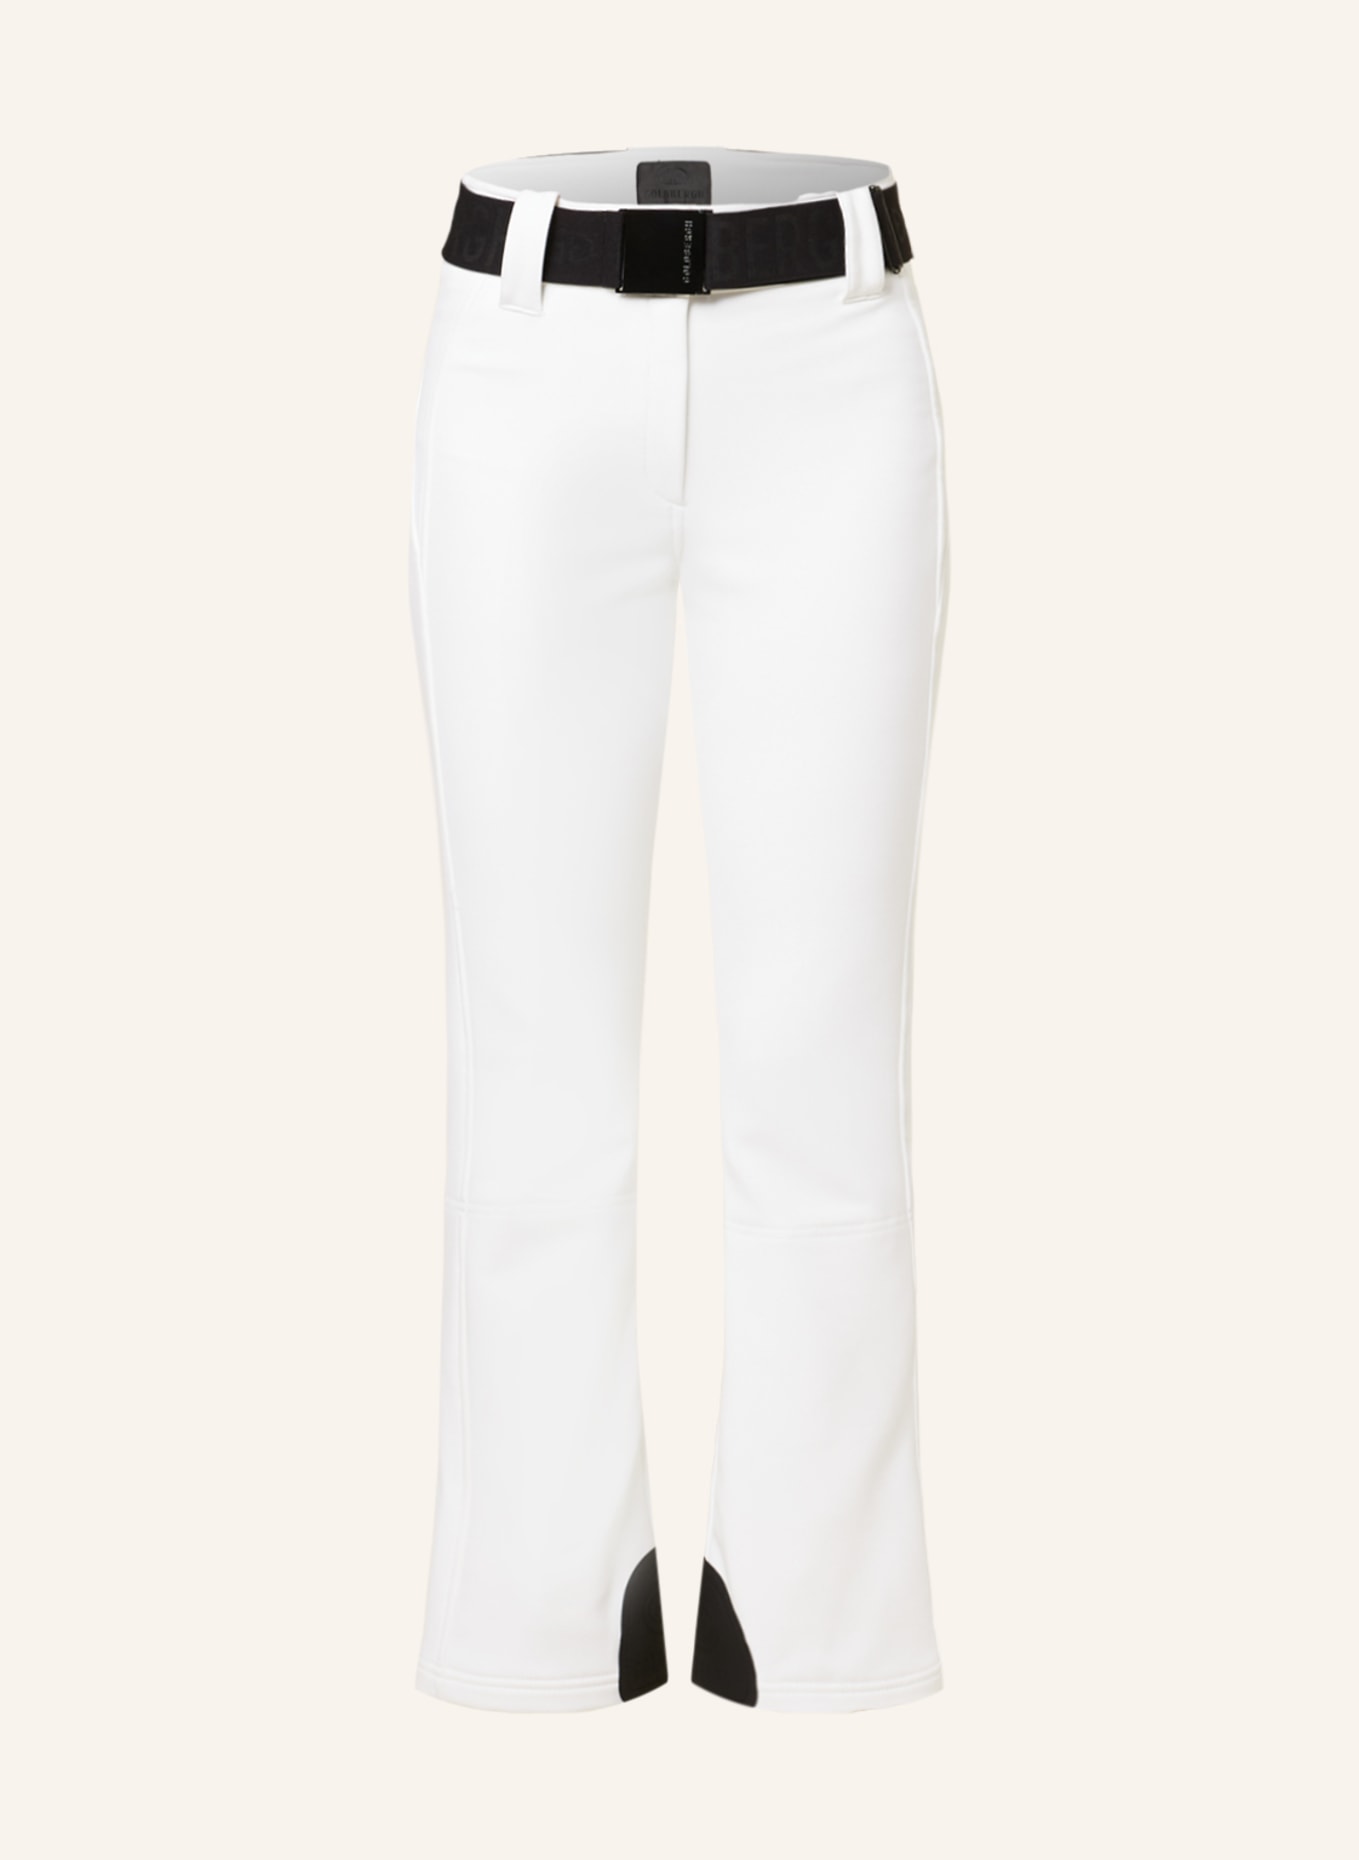 GOLDBERGH Ski trousers PIPPA, Color: WHITE (Image 1)